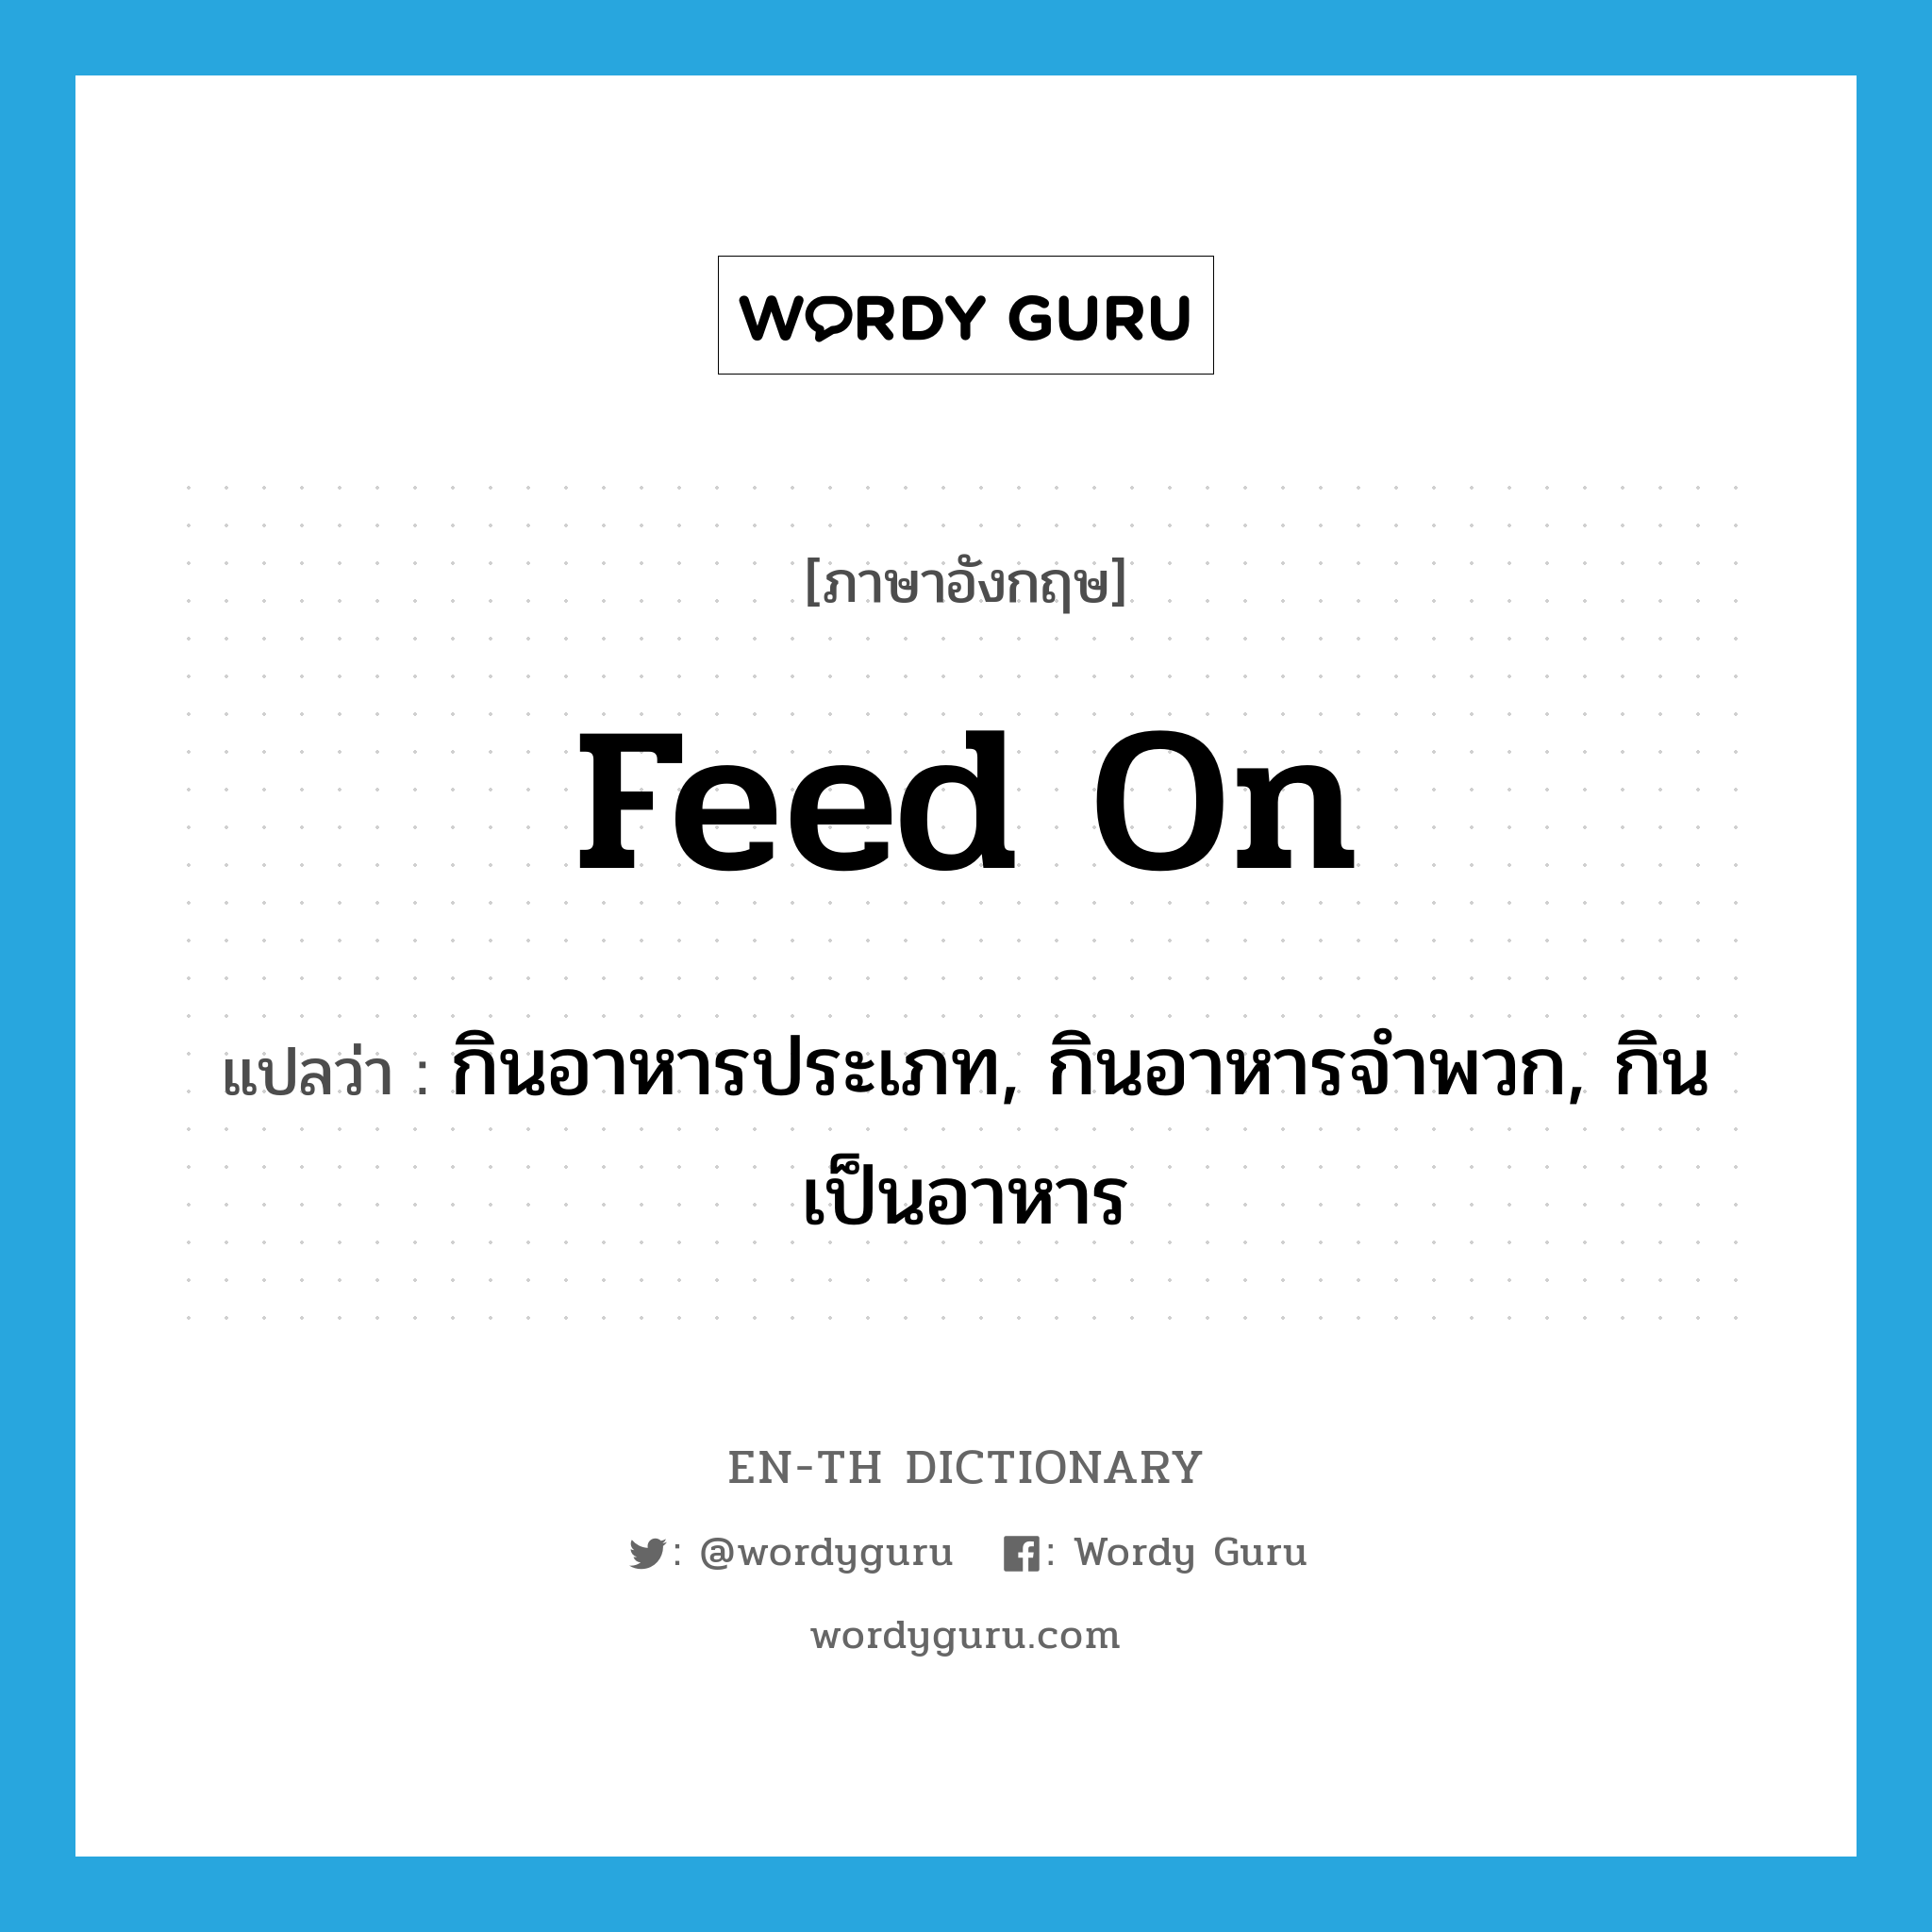 feed on แปลว่า?, คำศัพท์ภาษาอังกฤษ feed on แปลว่า กินอาหารประเภท, กินอาหารจำพวก, กินเป็นอาหาร ประเภท PHRV หมวด PHRV